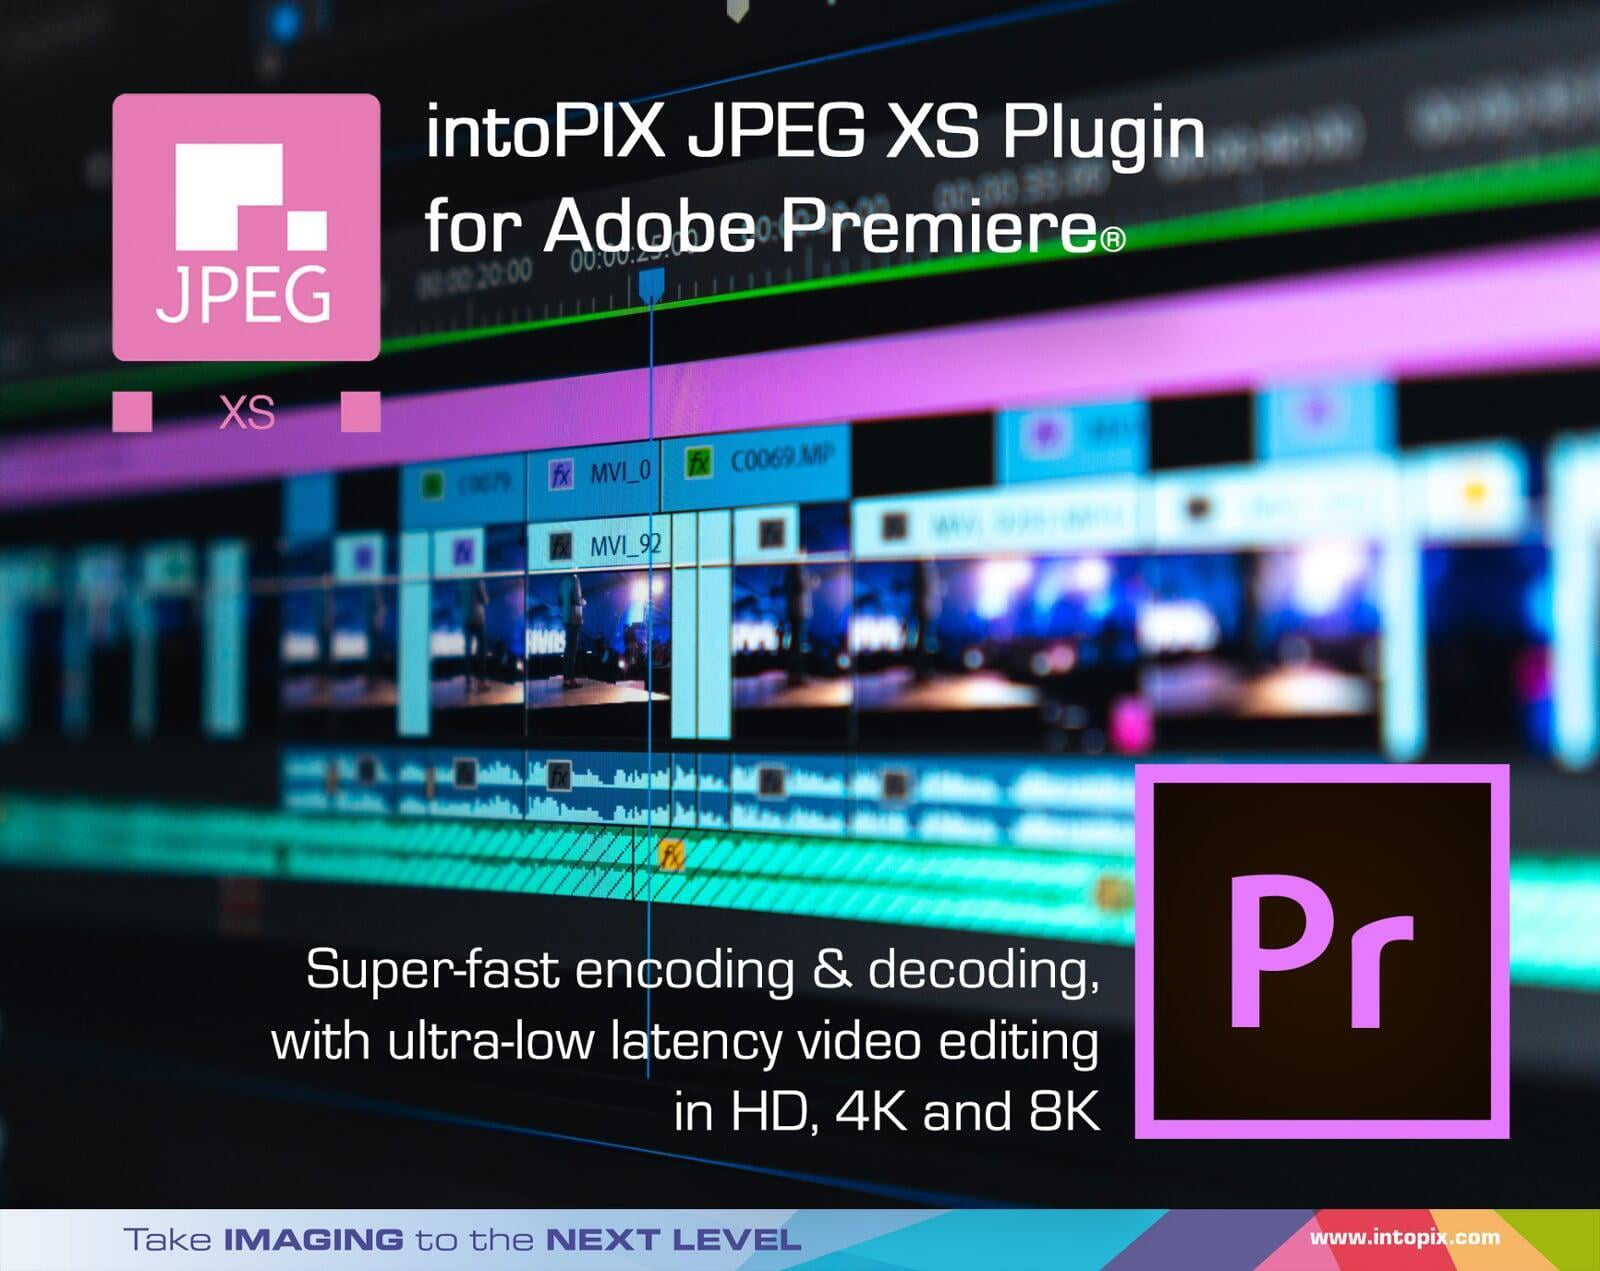 intoPIXのAdobe Premiere®用のJPEG XSプラグインを採用して、ライブビデオワークフローを簡素化します。 